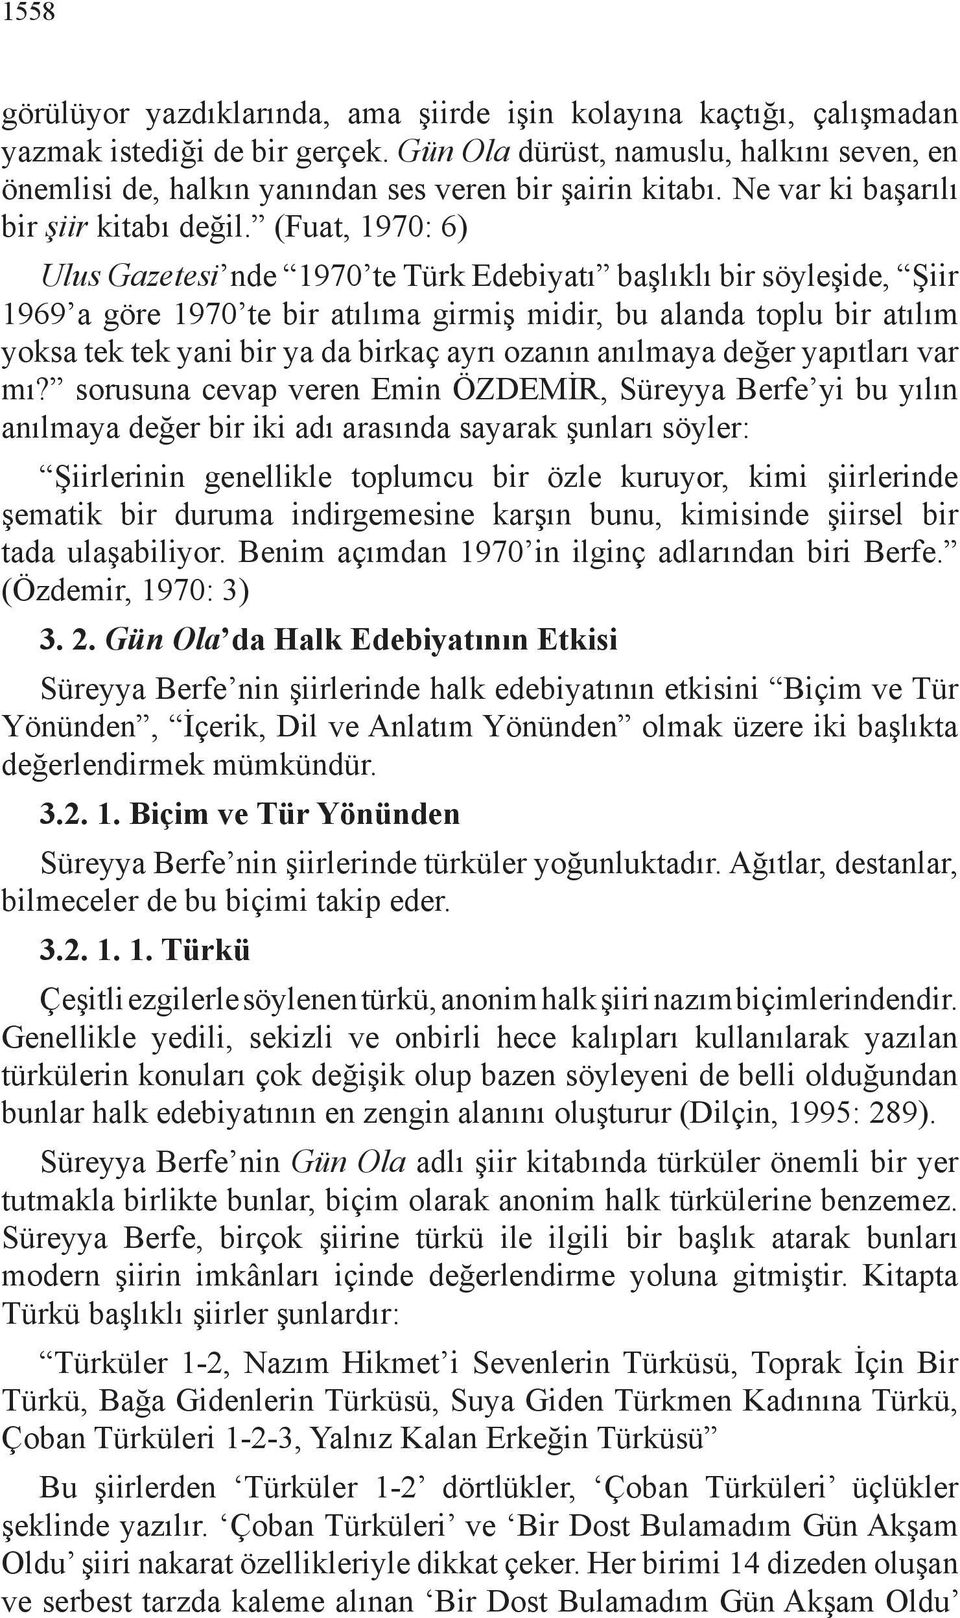 (Fuat, 1970: 6) Ulus Gazetesi nde 1970 te Türk Edebiyatı başlıklı bir söyleşide, Şiir 1969 a göre 1970 te bir atılıma girmiş midir, bu alanda toplu bir atılım yoksa tek tek yani bir ya da birkaç ayrı